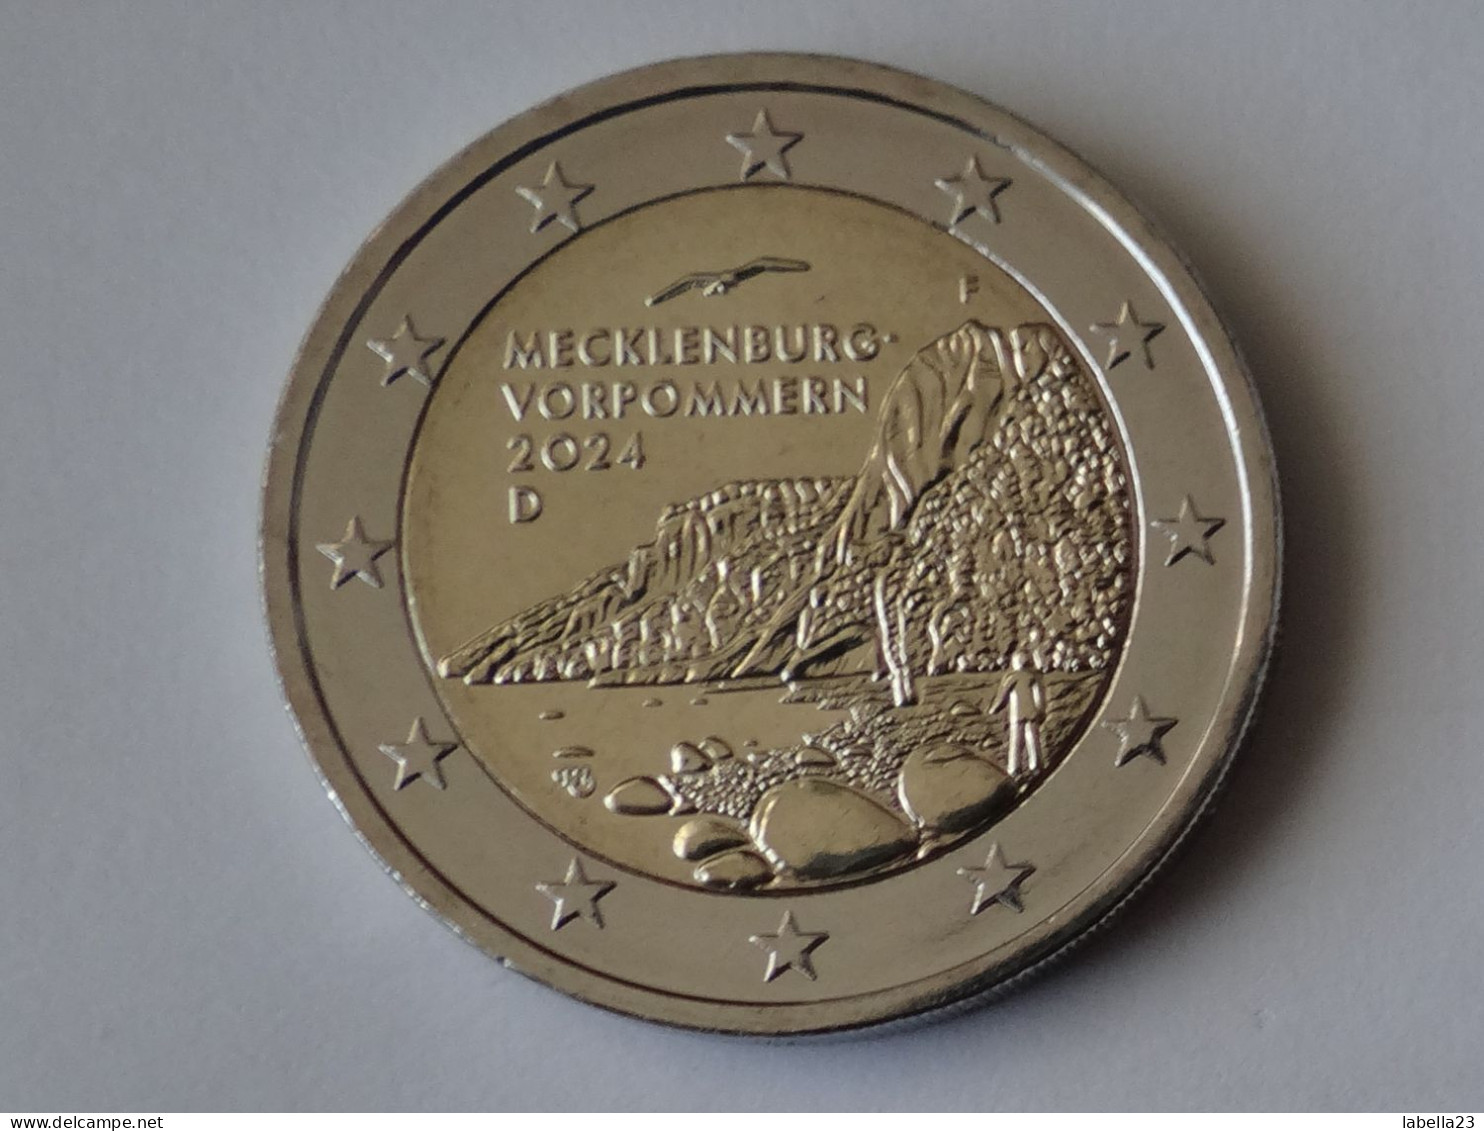 2 Euro Münze 2024 Länderserie II -"Mecklenburg-Vorpommern", Königsstuhl, Ausgabe F - Germania